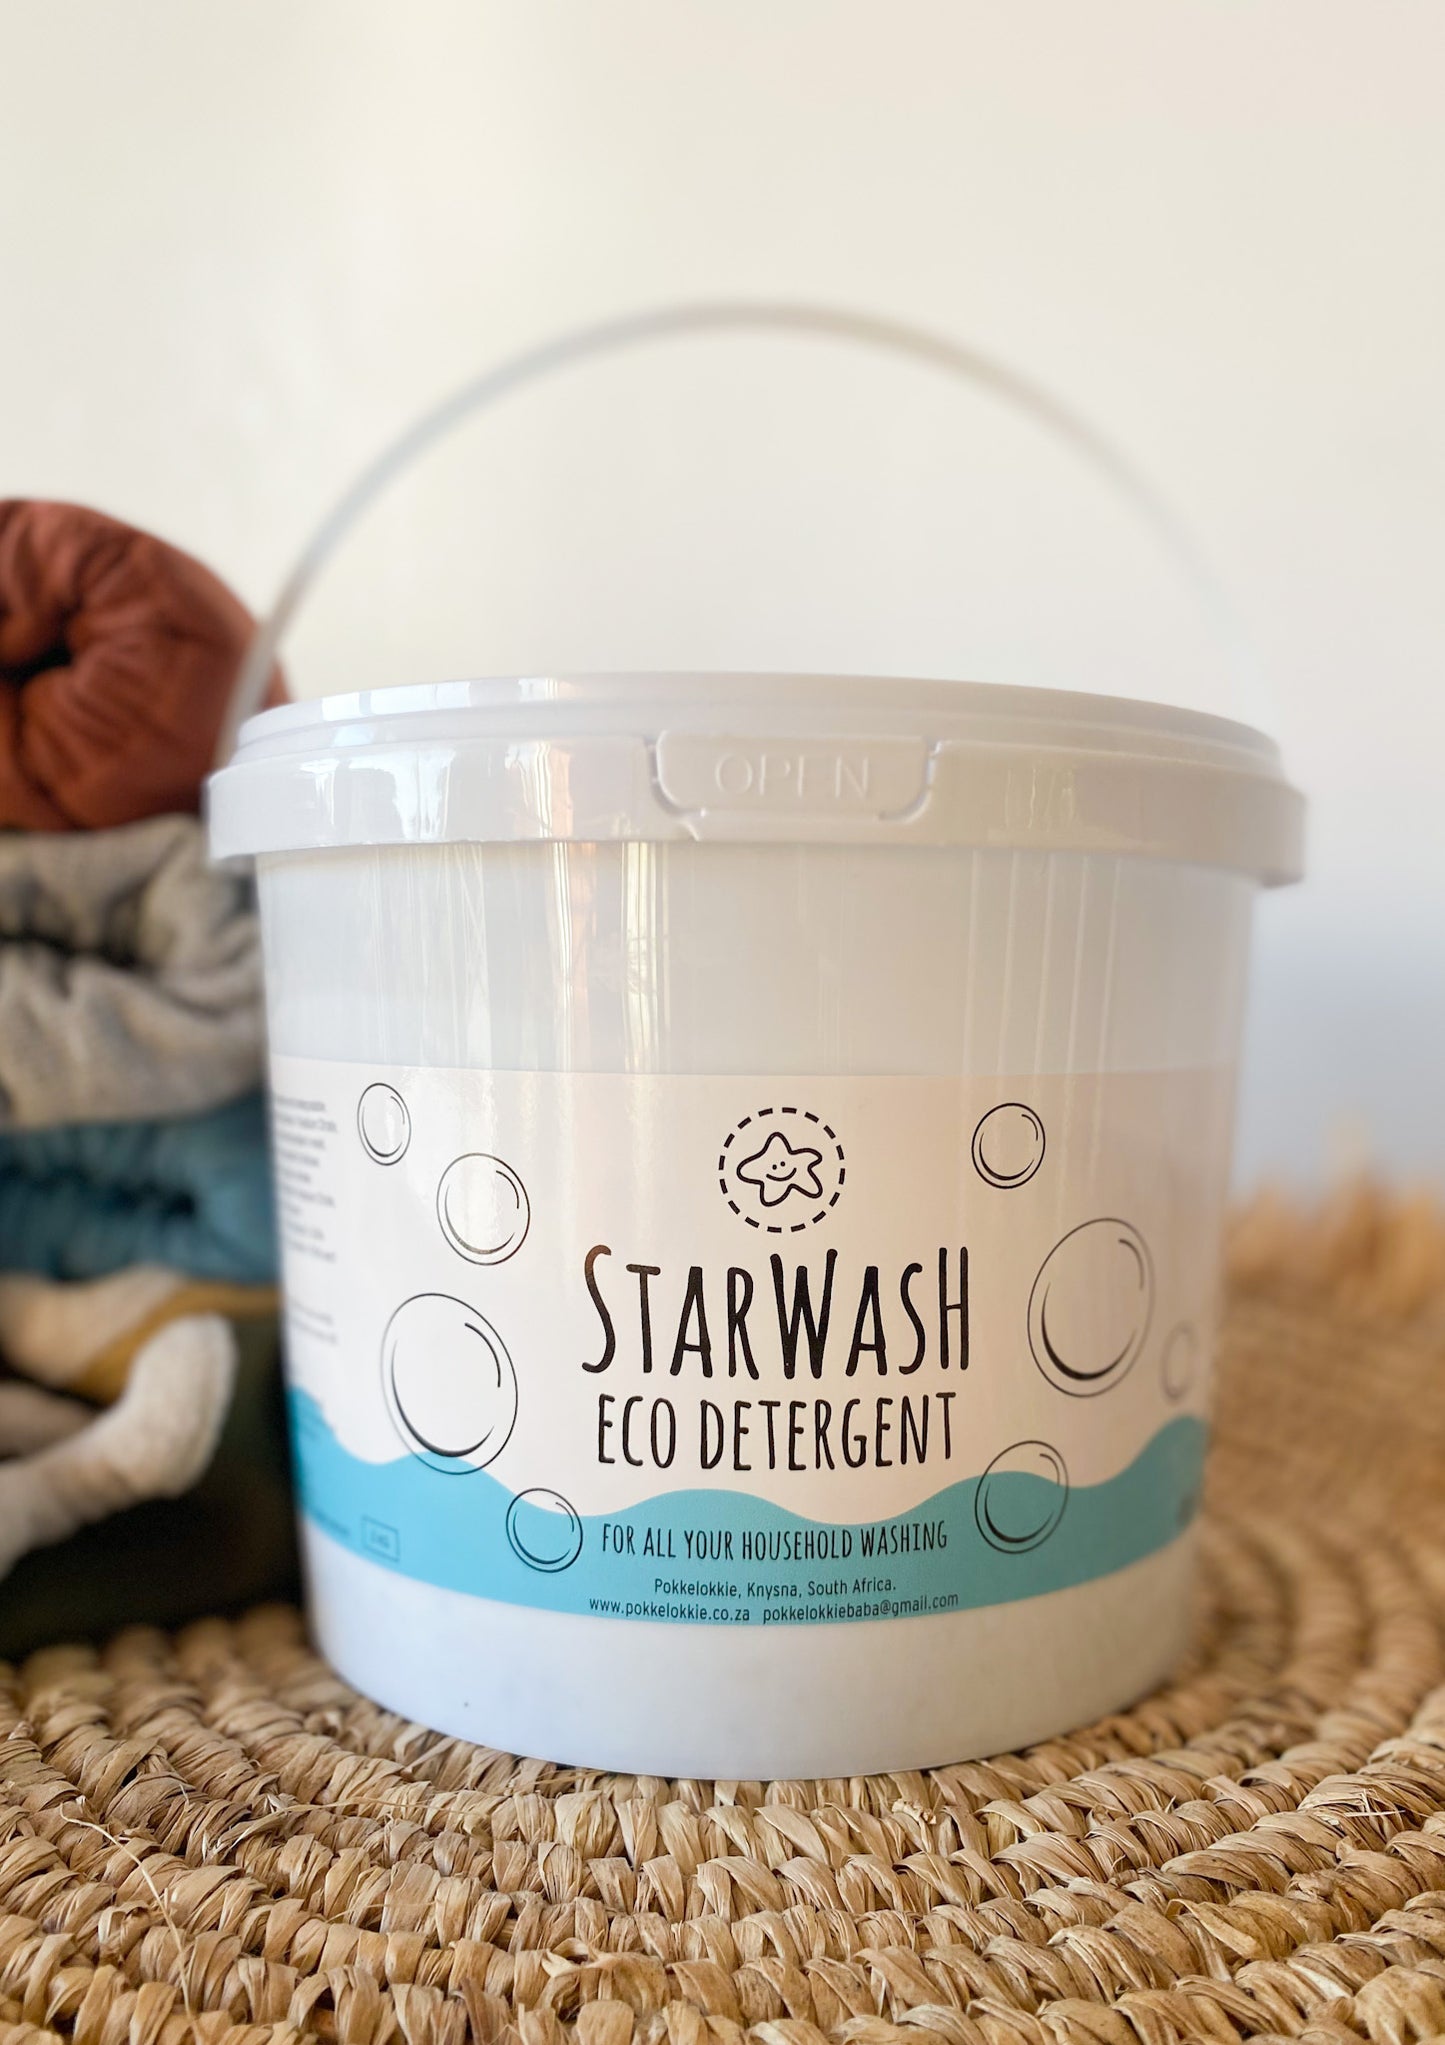 Starwash eco detergent